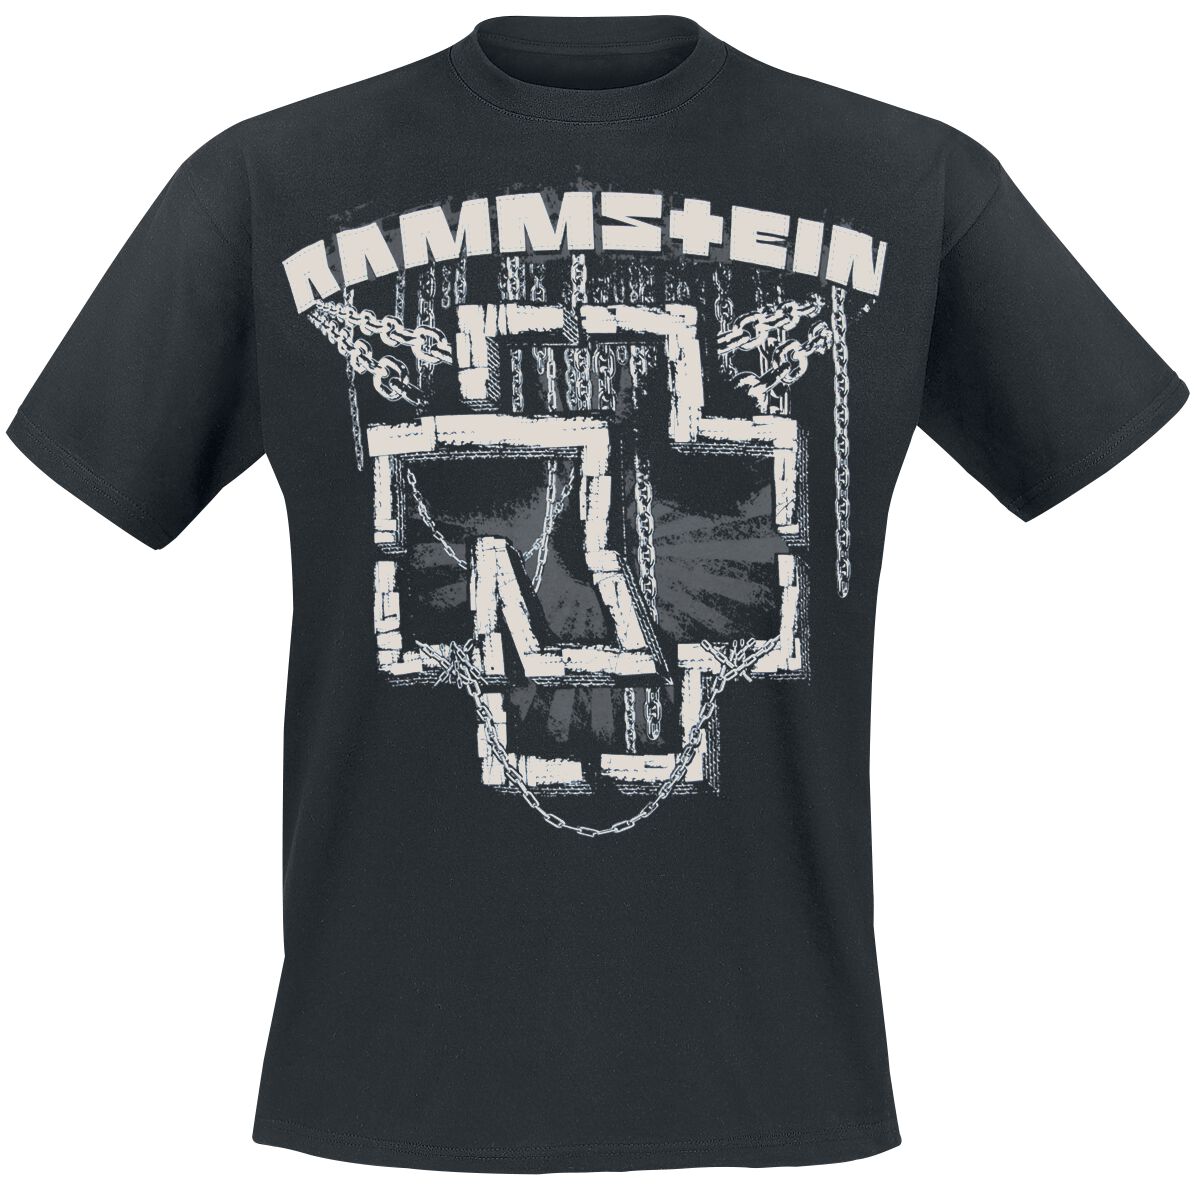 Rammstein T-Shirt - In Ketten - M bis 3XL - für Männer - Größe XXL - schwarz  - Lizenziertes Merchandise!